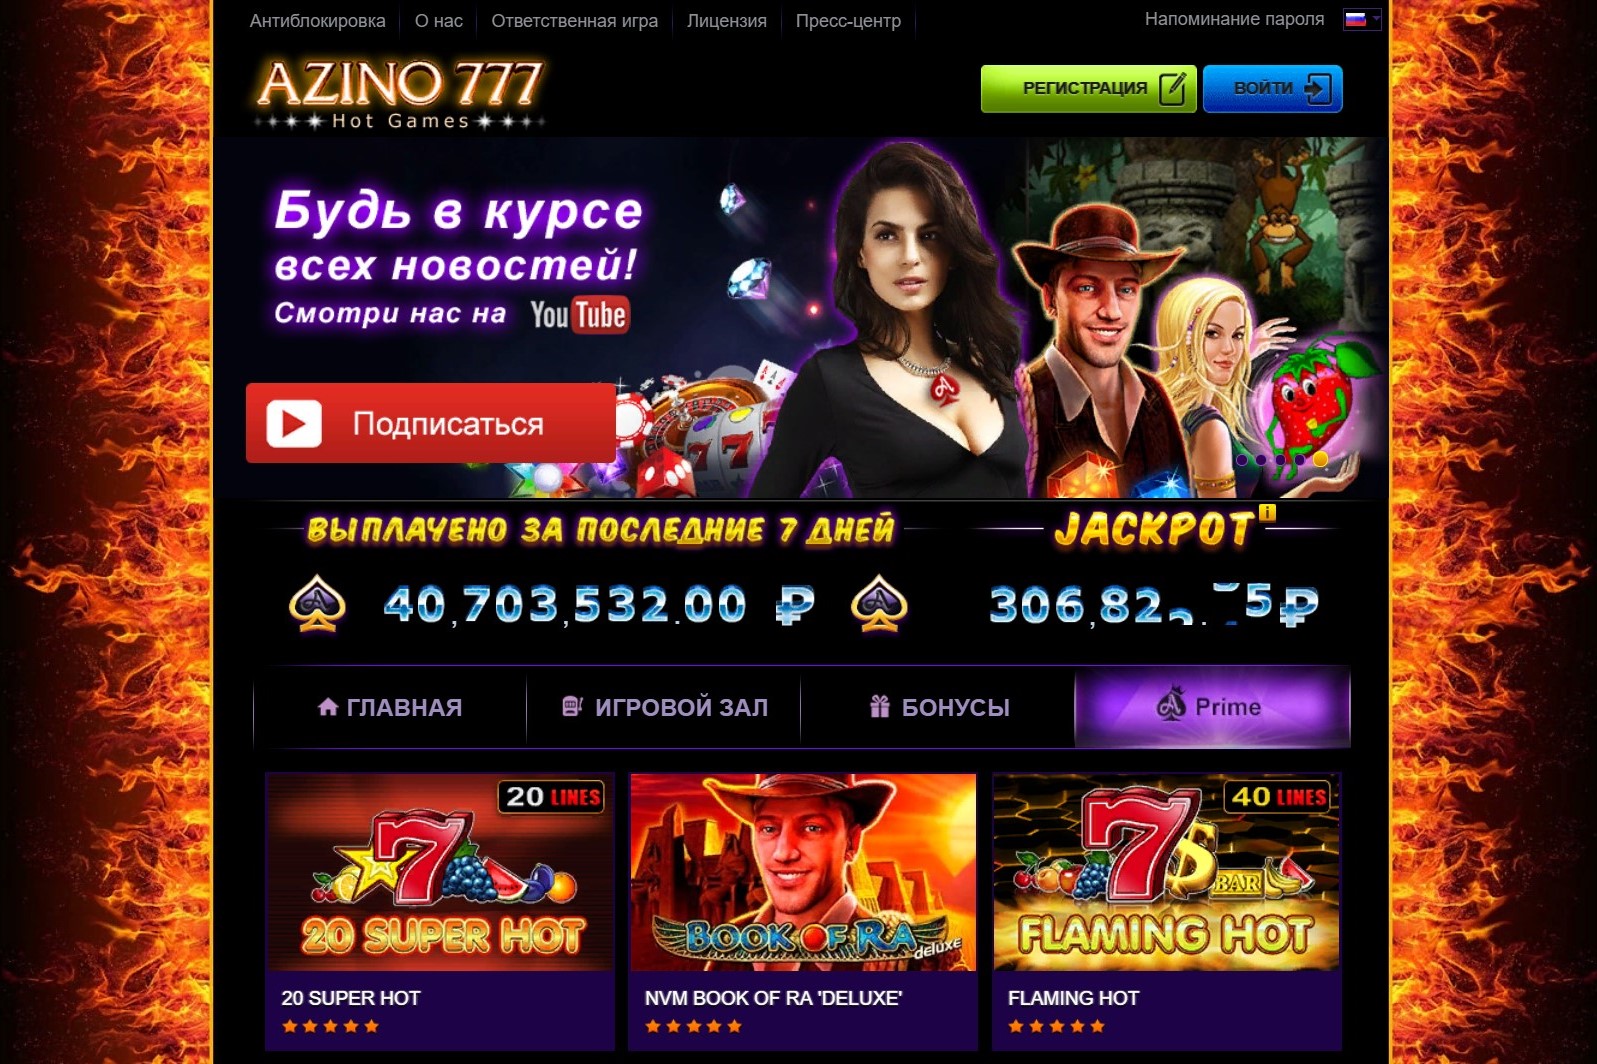 Azino777 com официальный сайт казино онлайн песня лелуша джекпот скачать